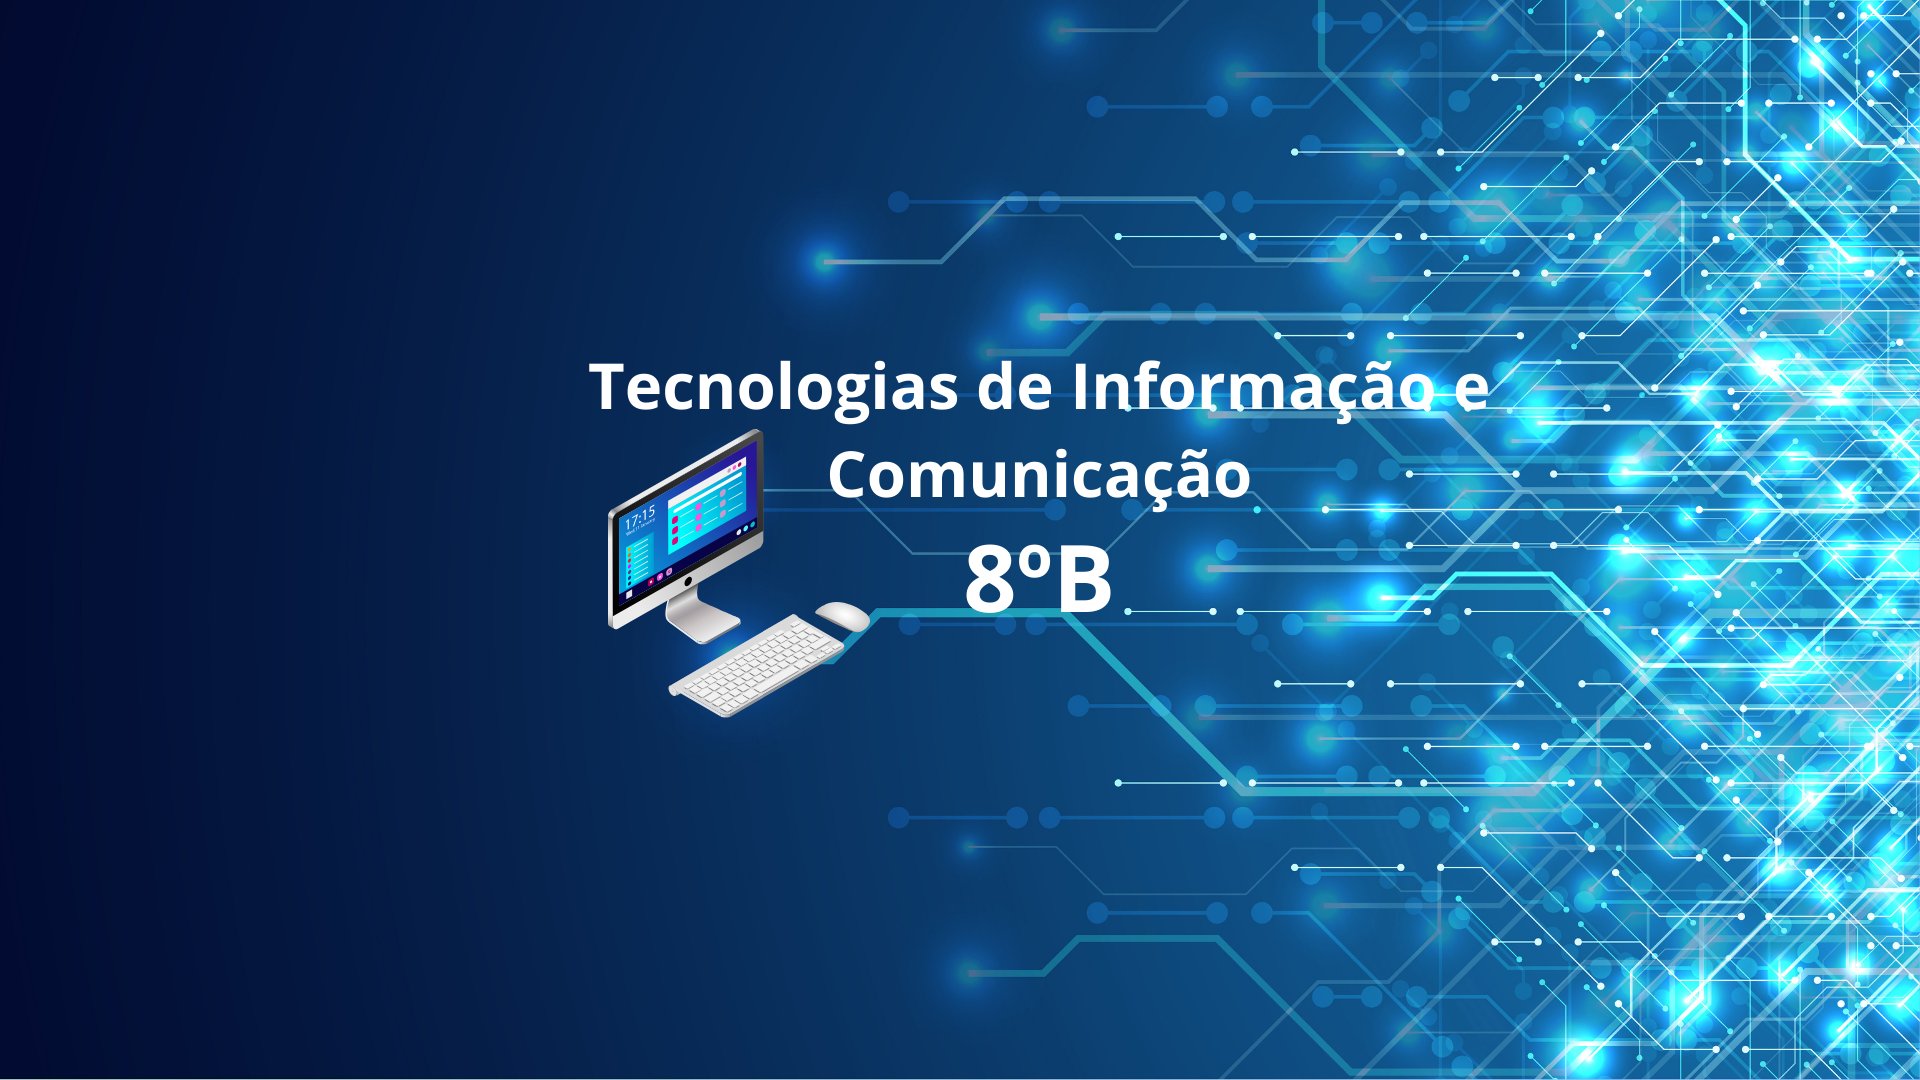 8B - Tecnologias de Informação e Comunicação